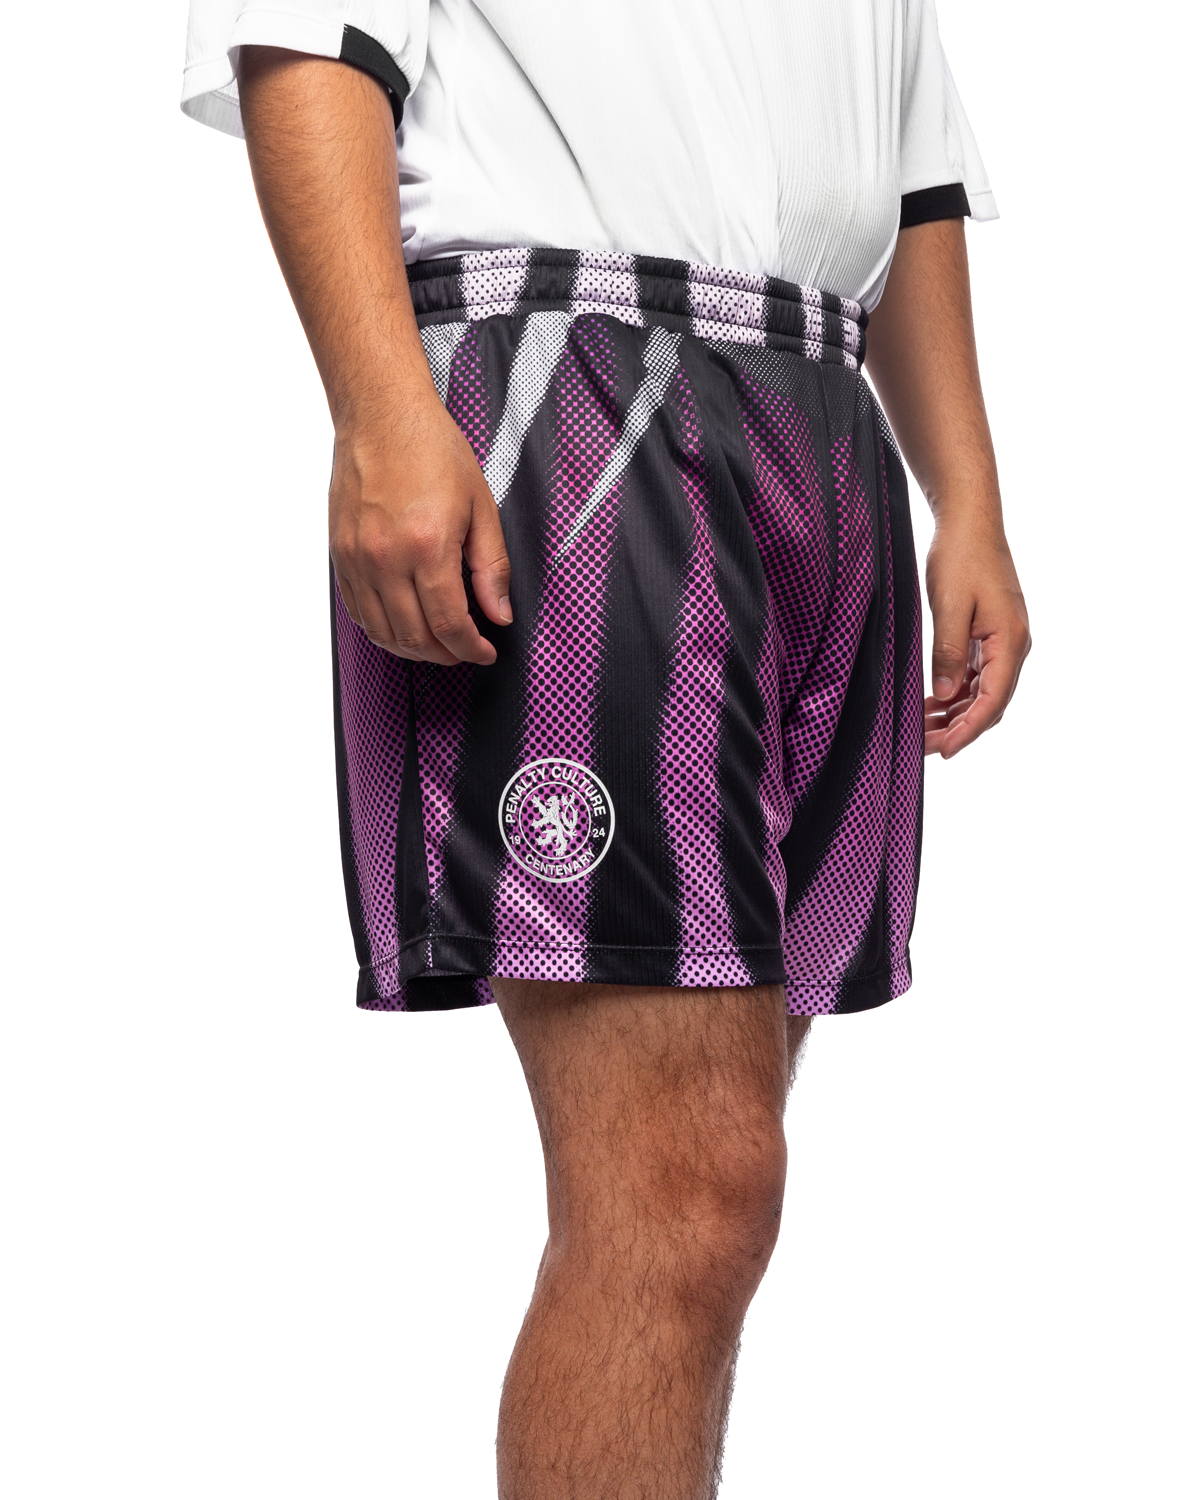 Kit Shorts Black Purple